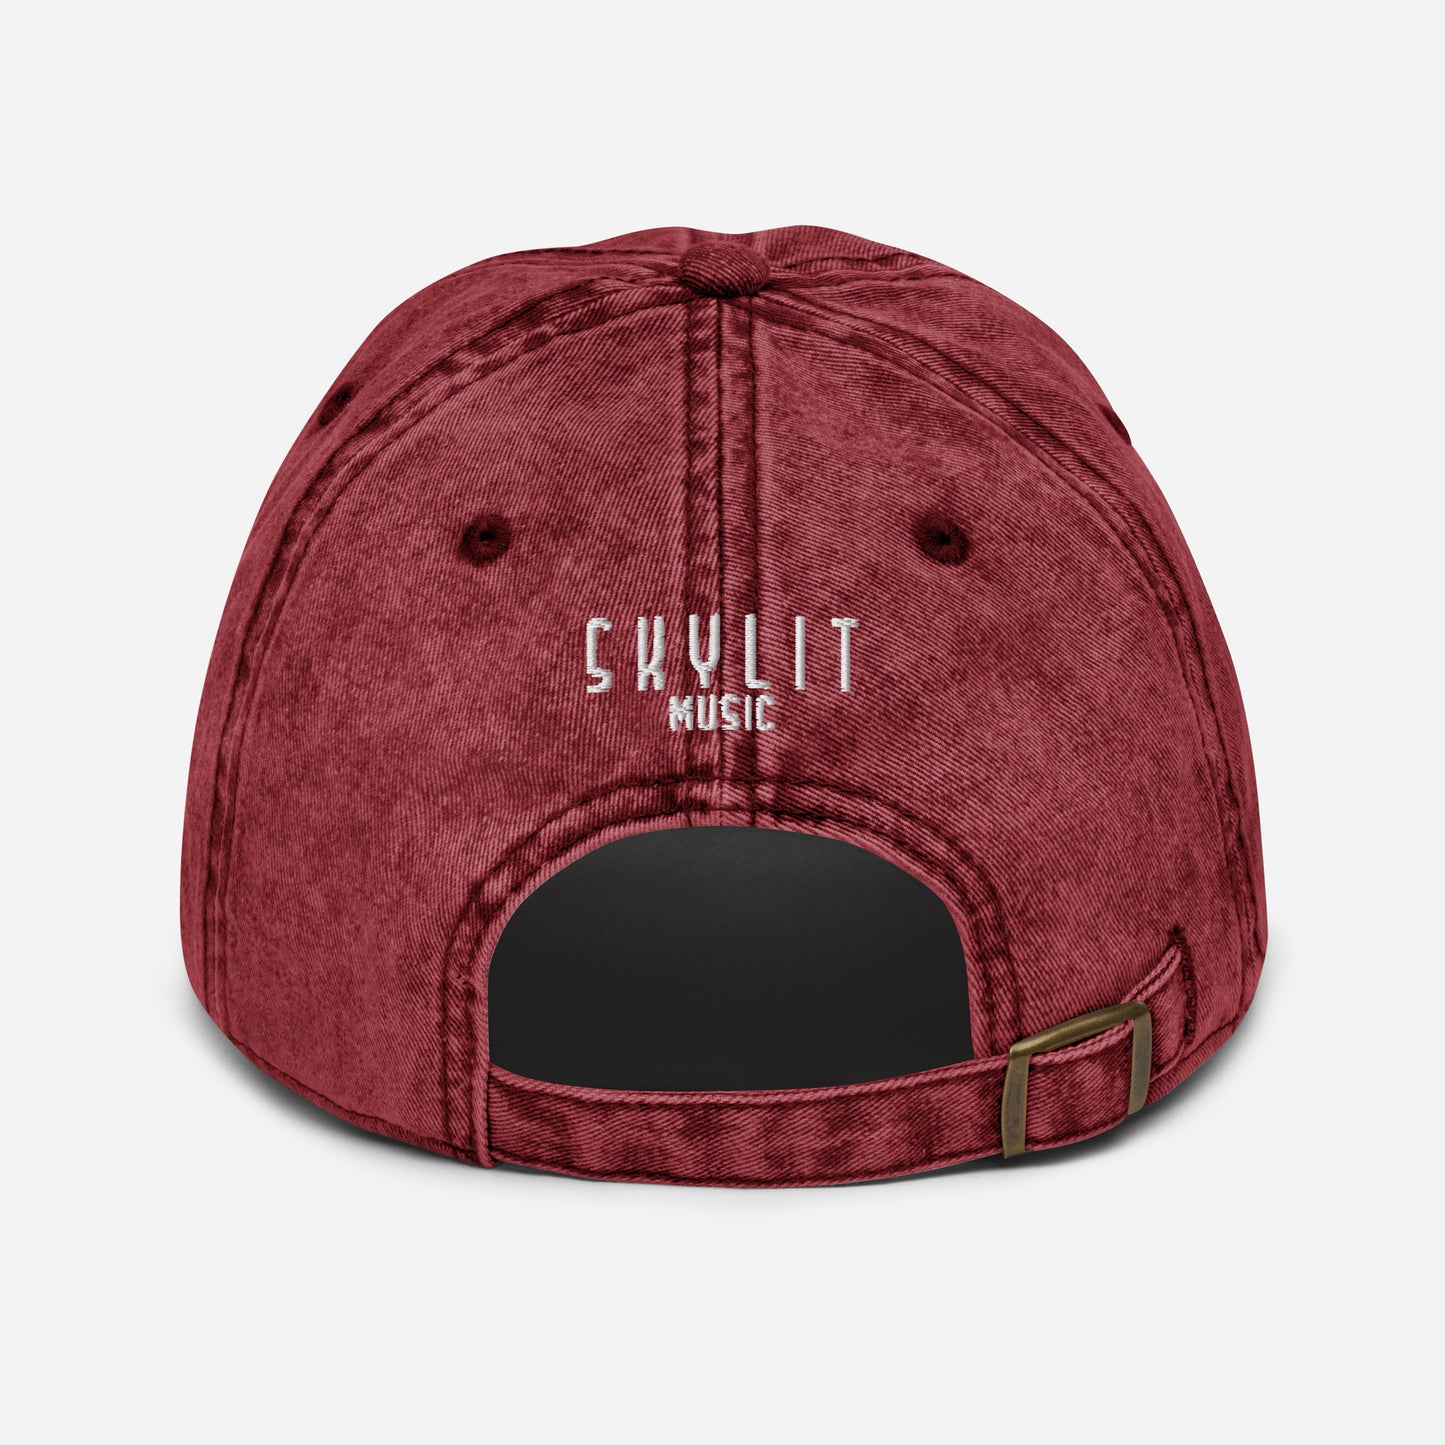 Skylit Vintage Twill Cap